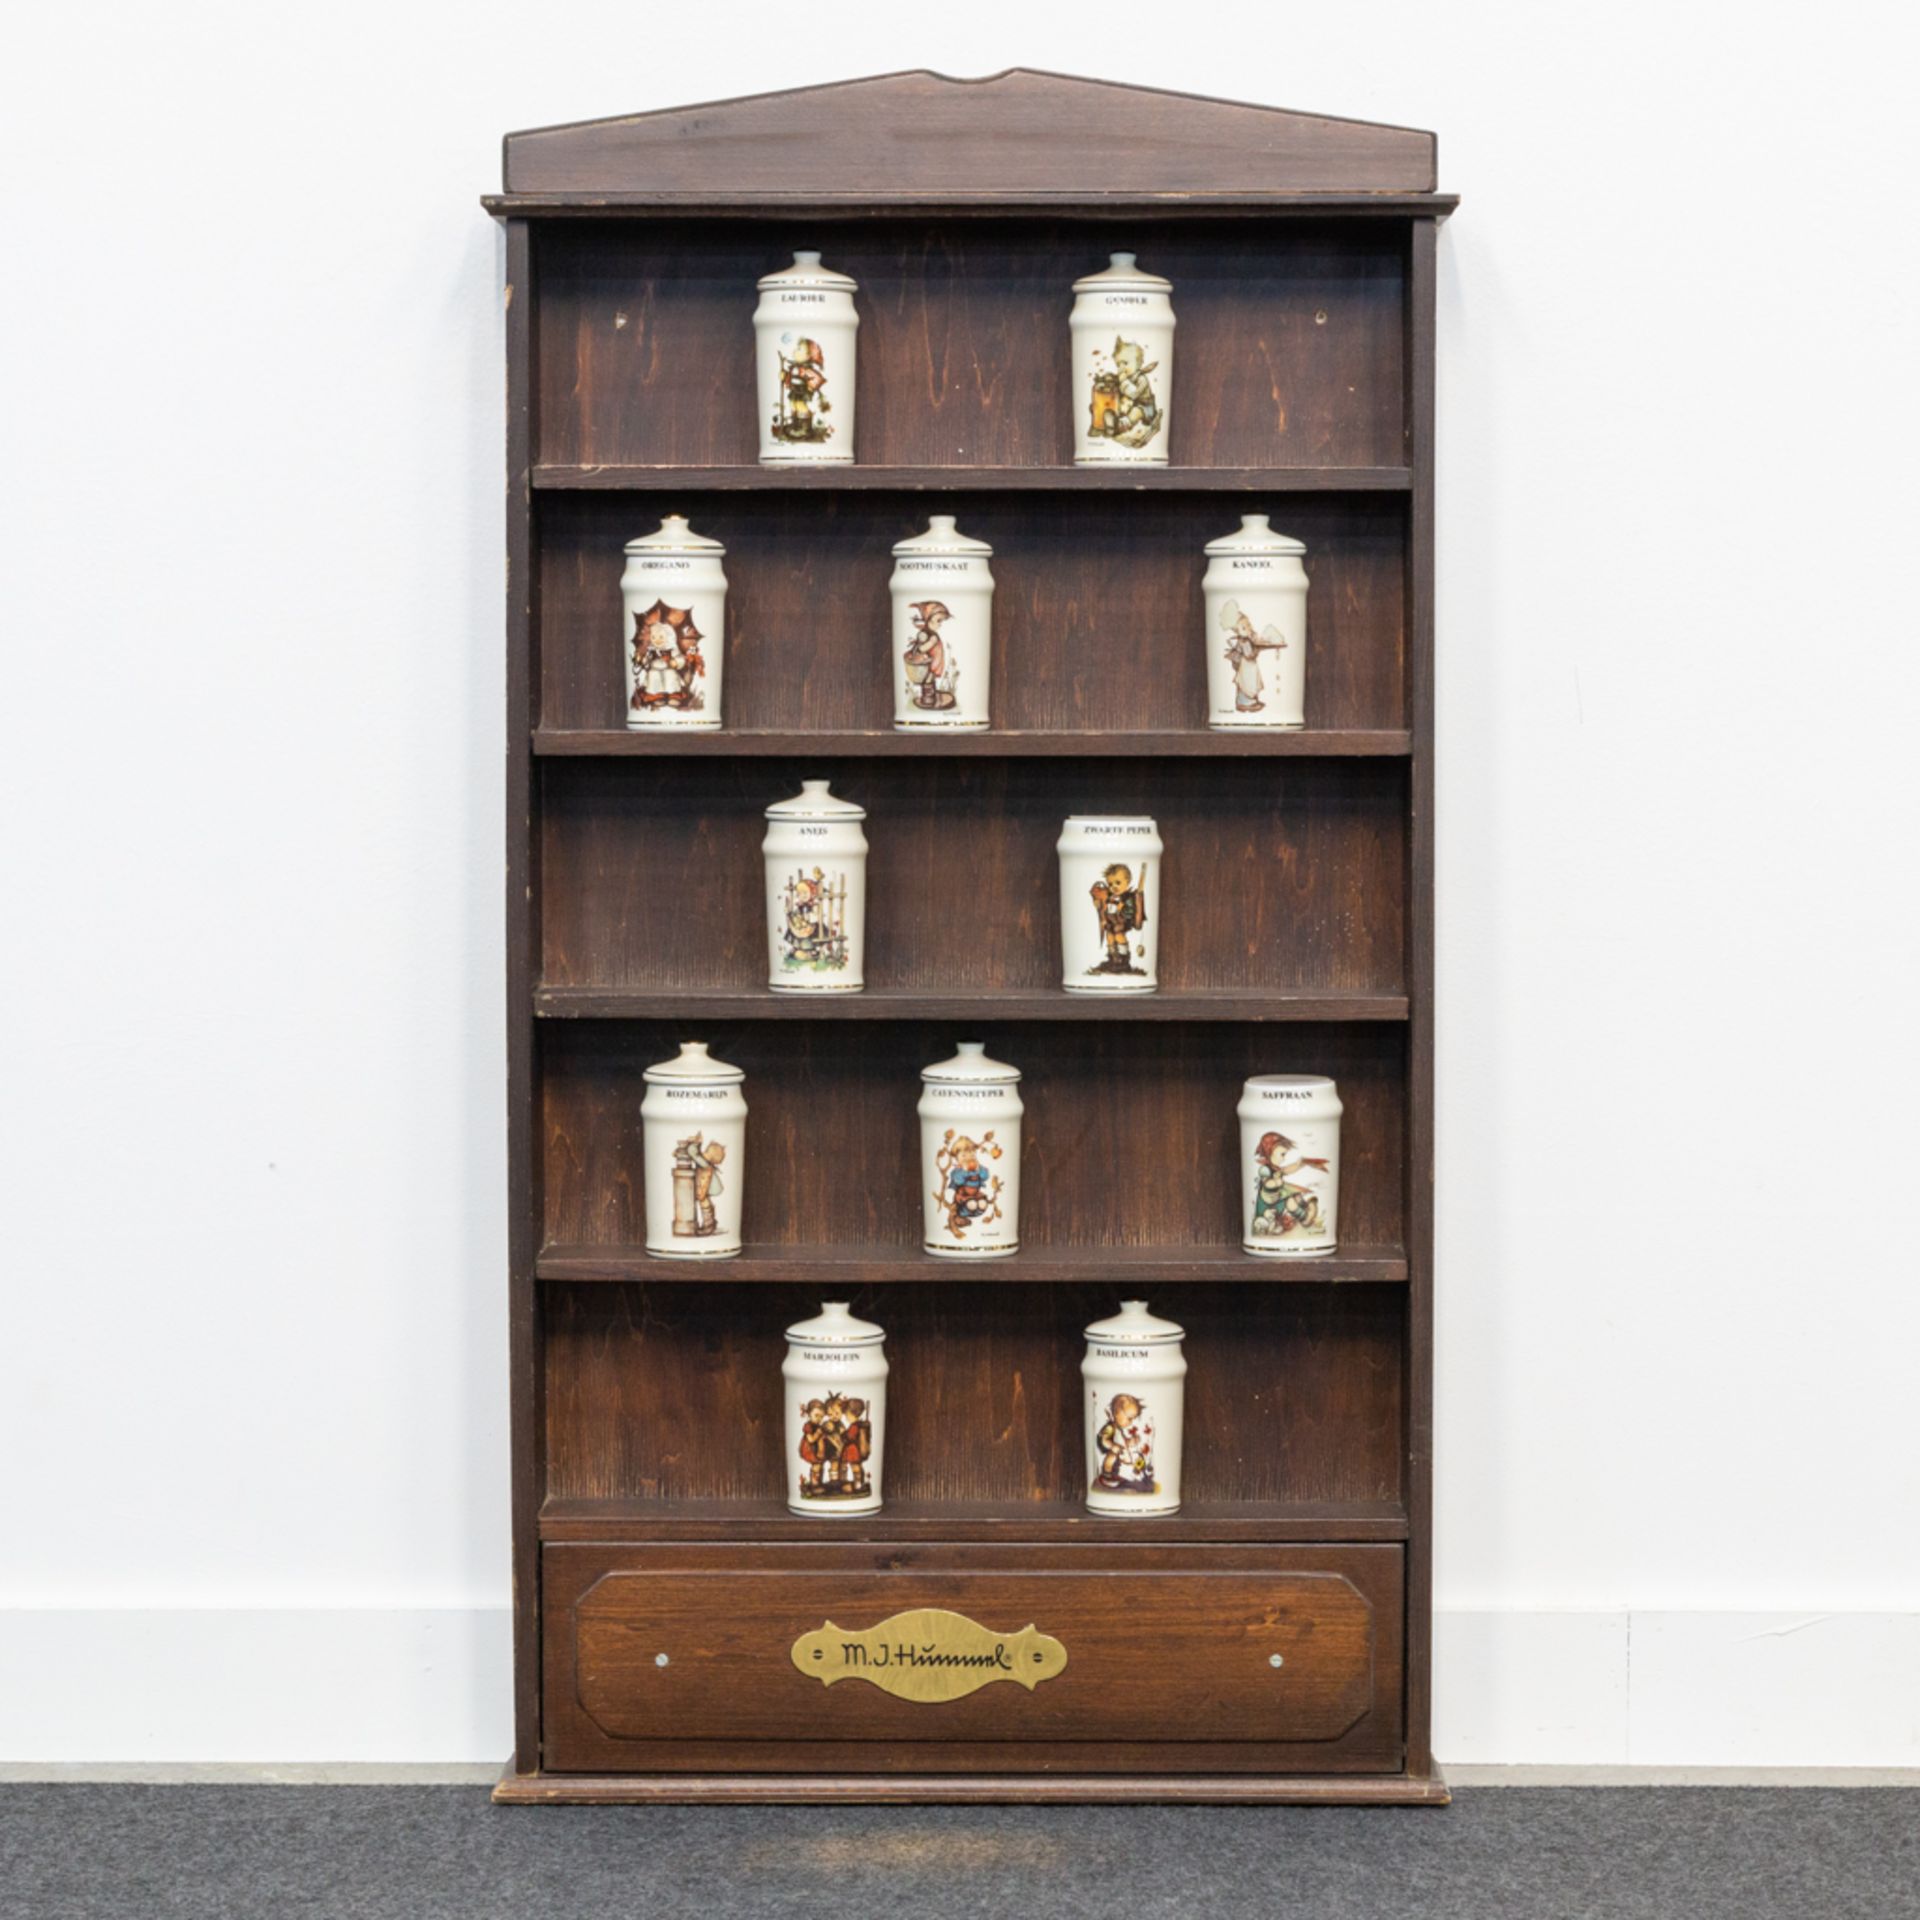 A Hummel wood spice cabinet with porcelain pots. (8 x 47 x 84 cm)